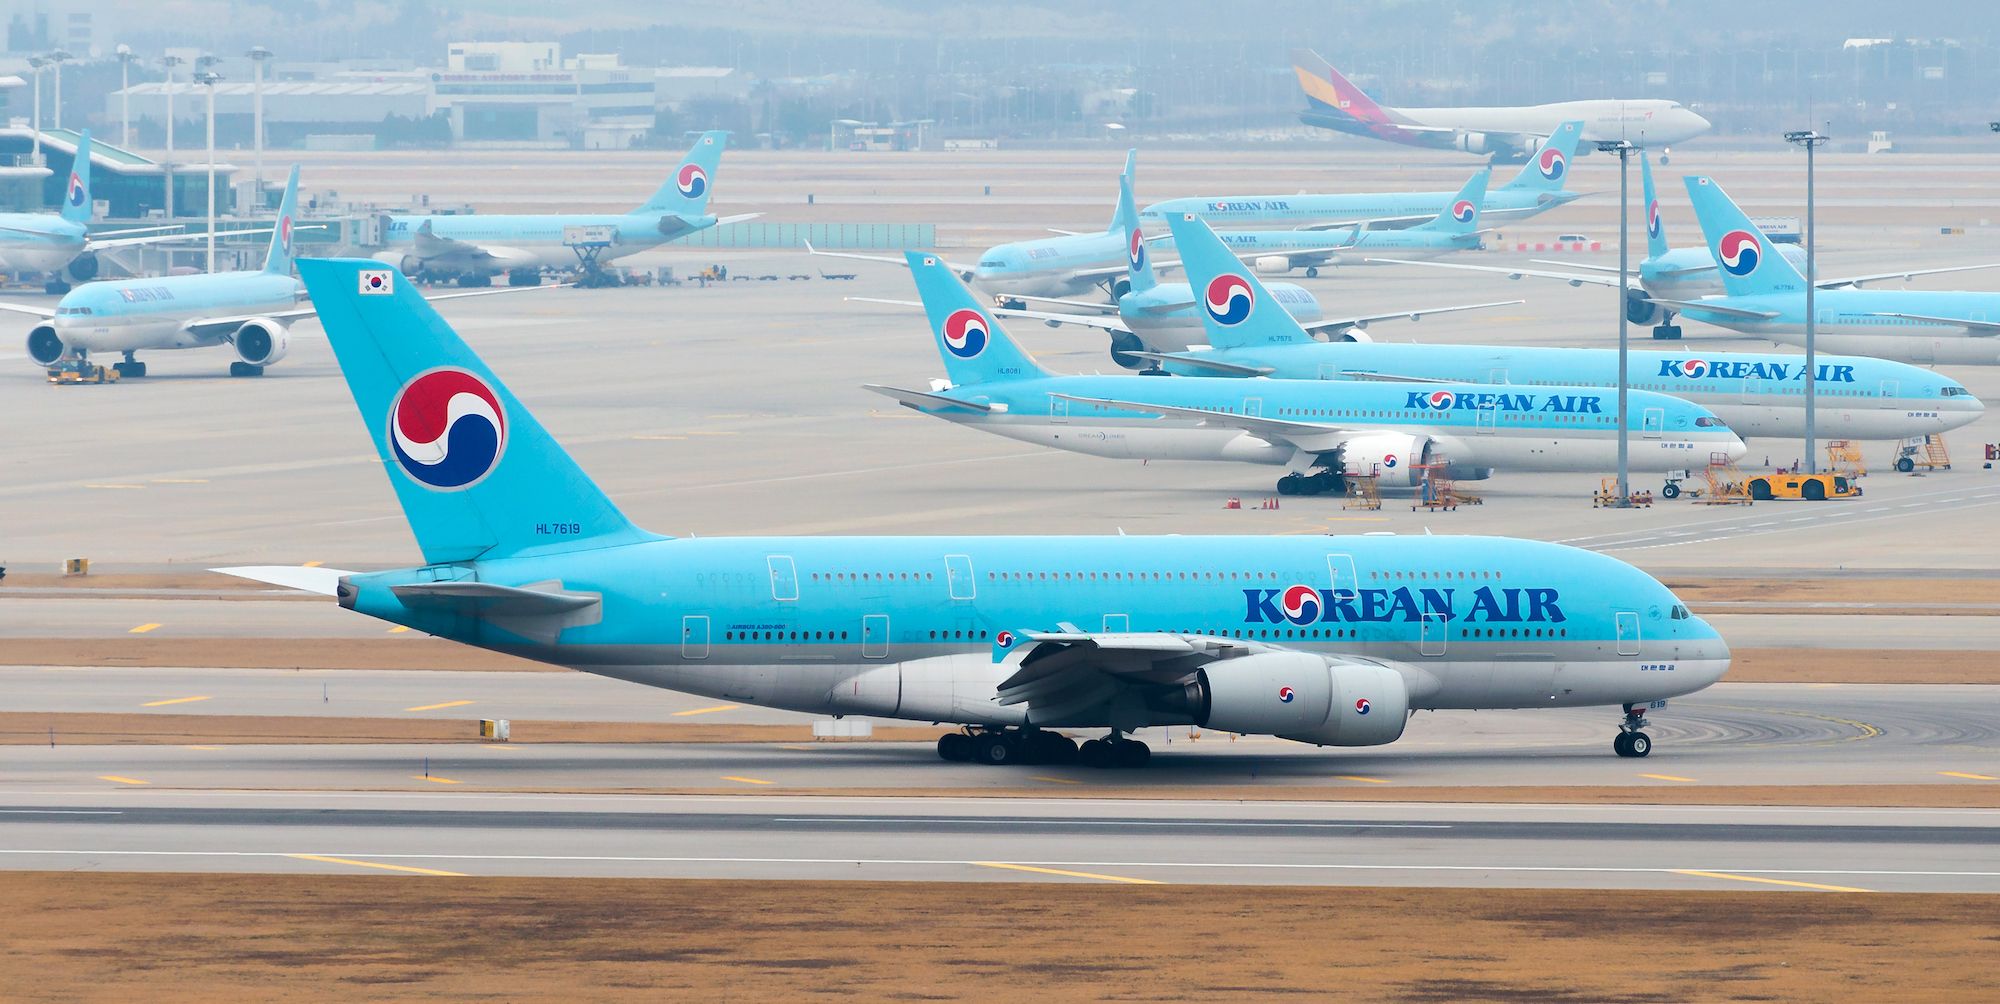 korean air airbus a380